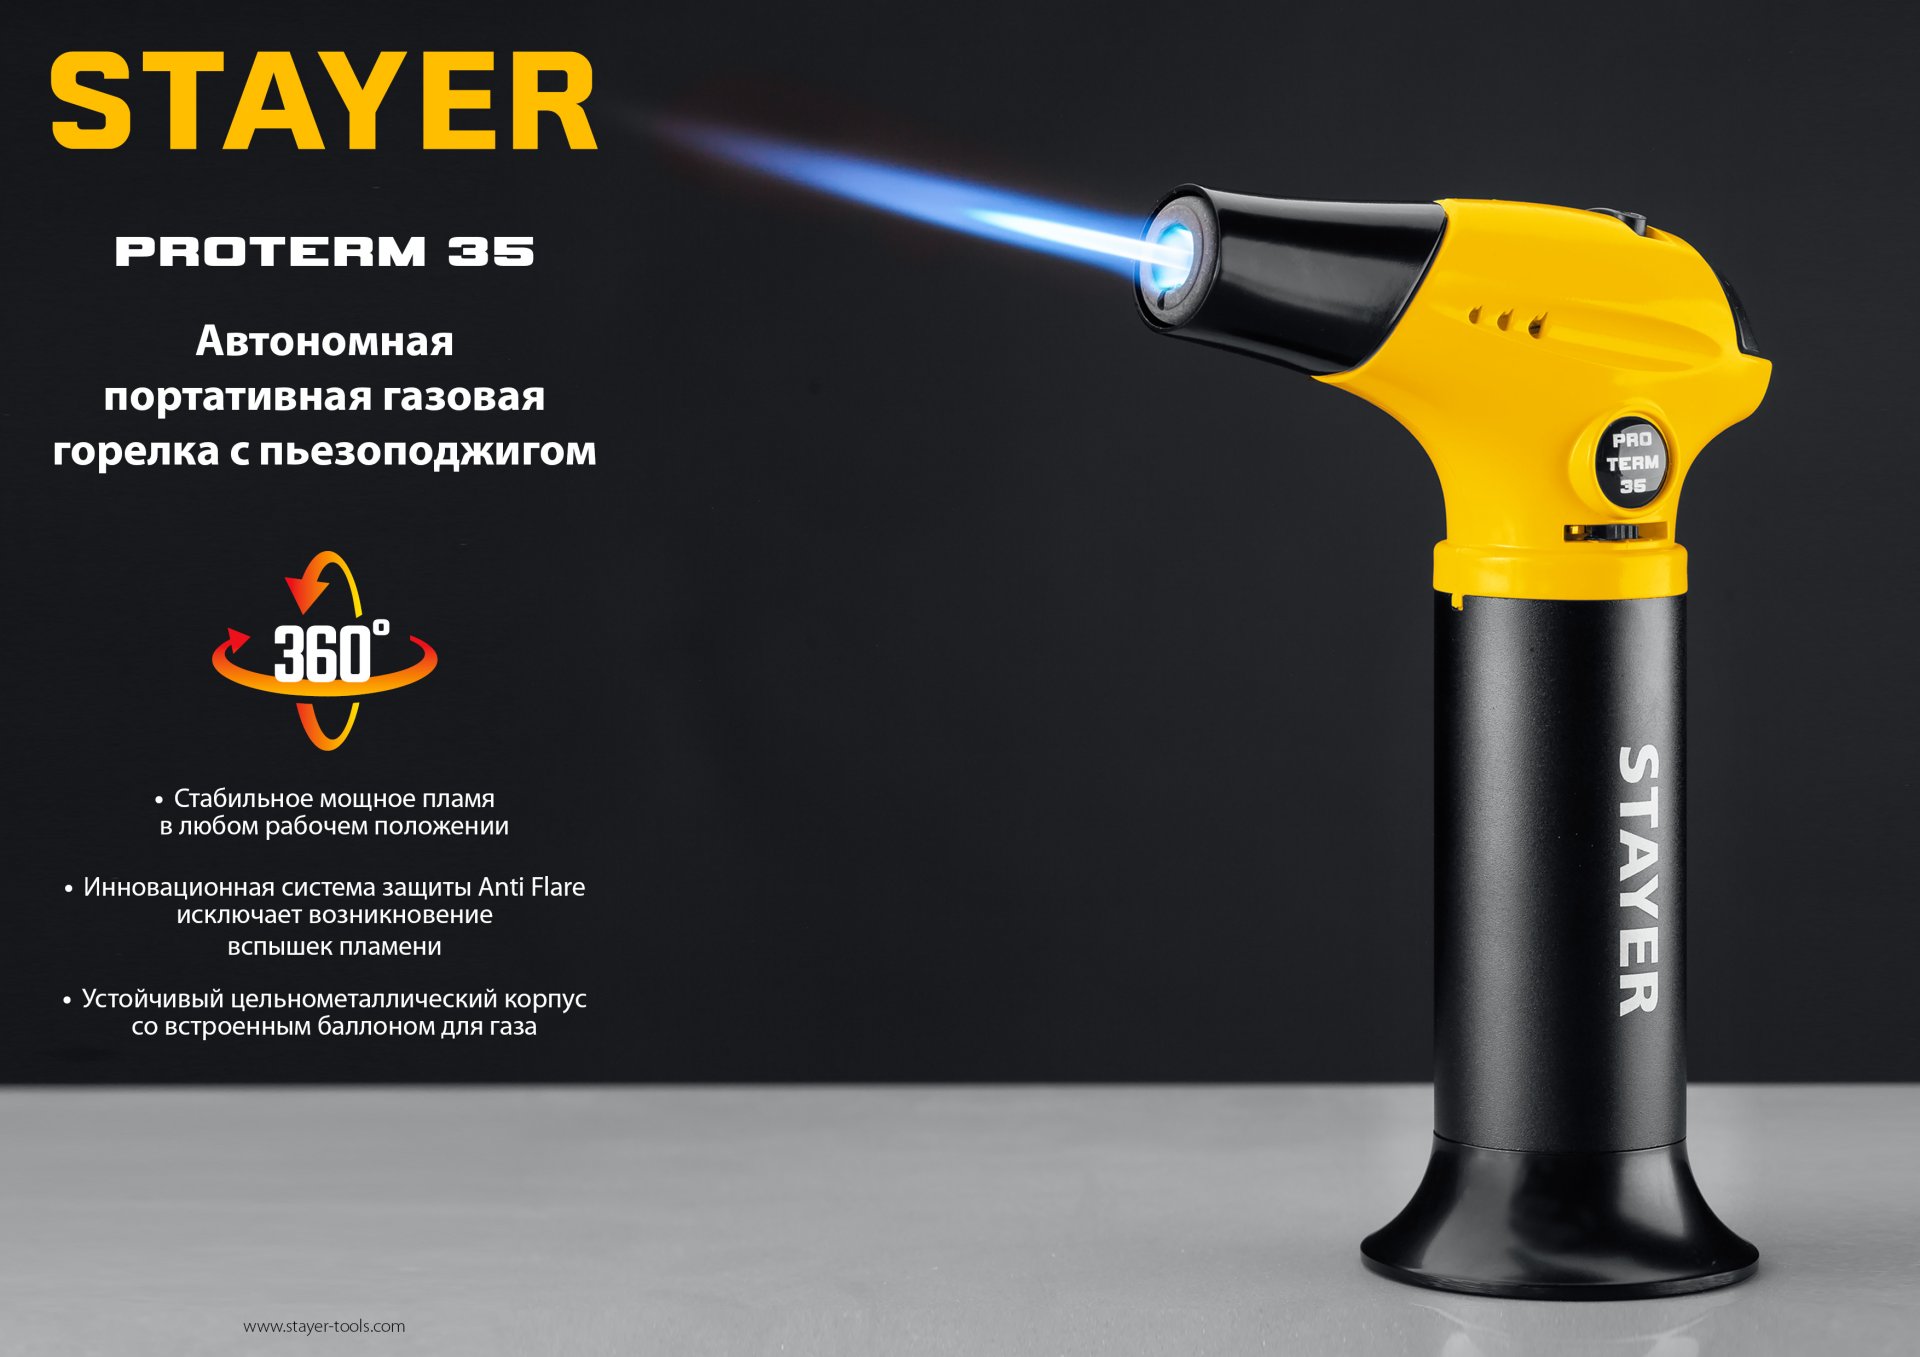 STAYER ProTerm 35, 1300°С, автономная газовая горелка с пьезоподжигом, Professional (55522)